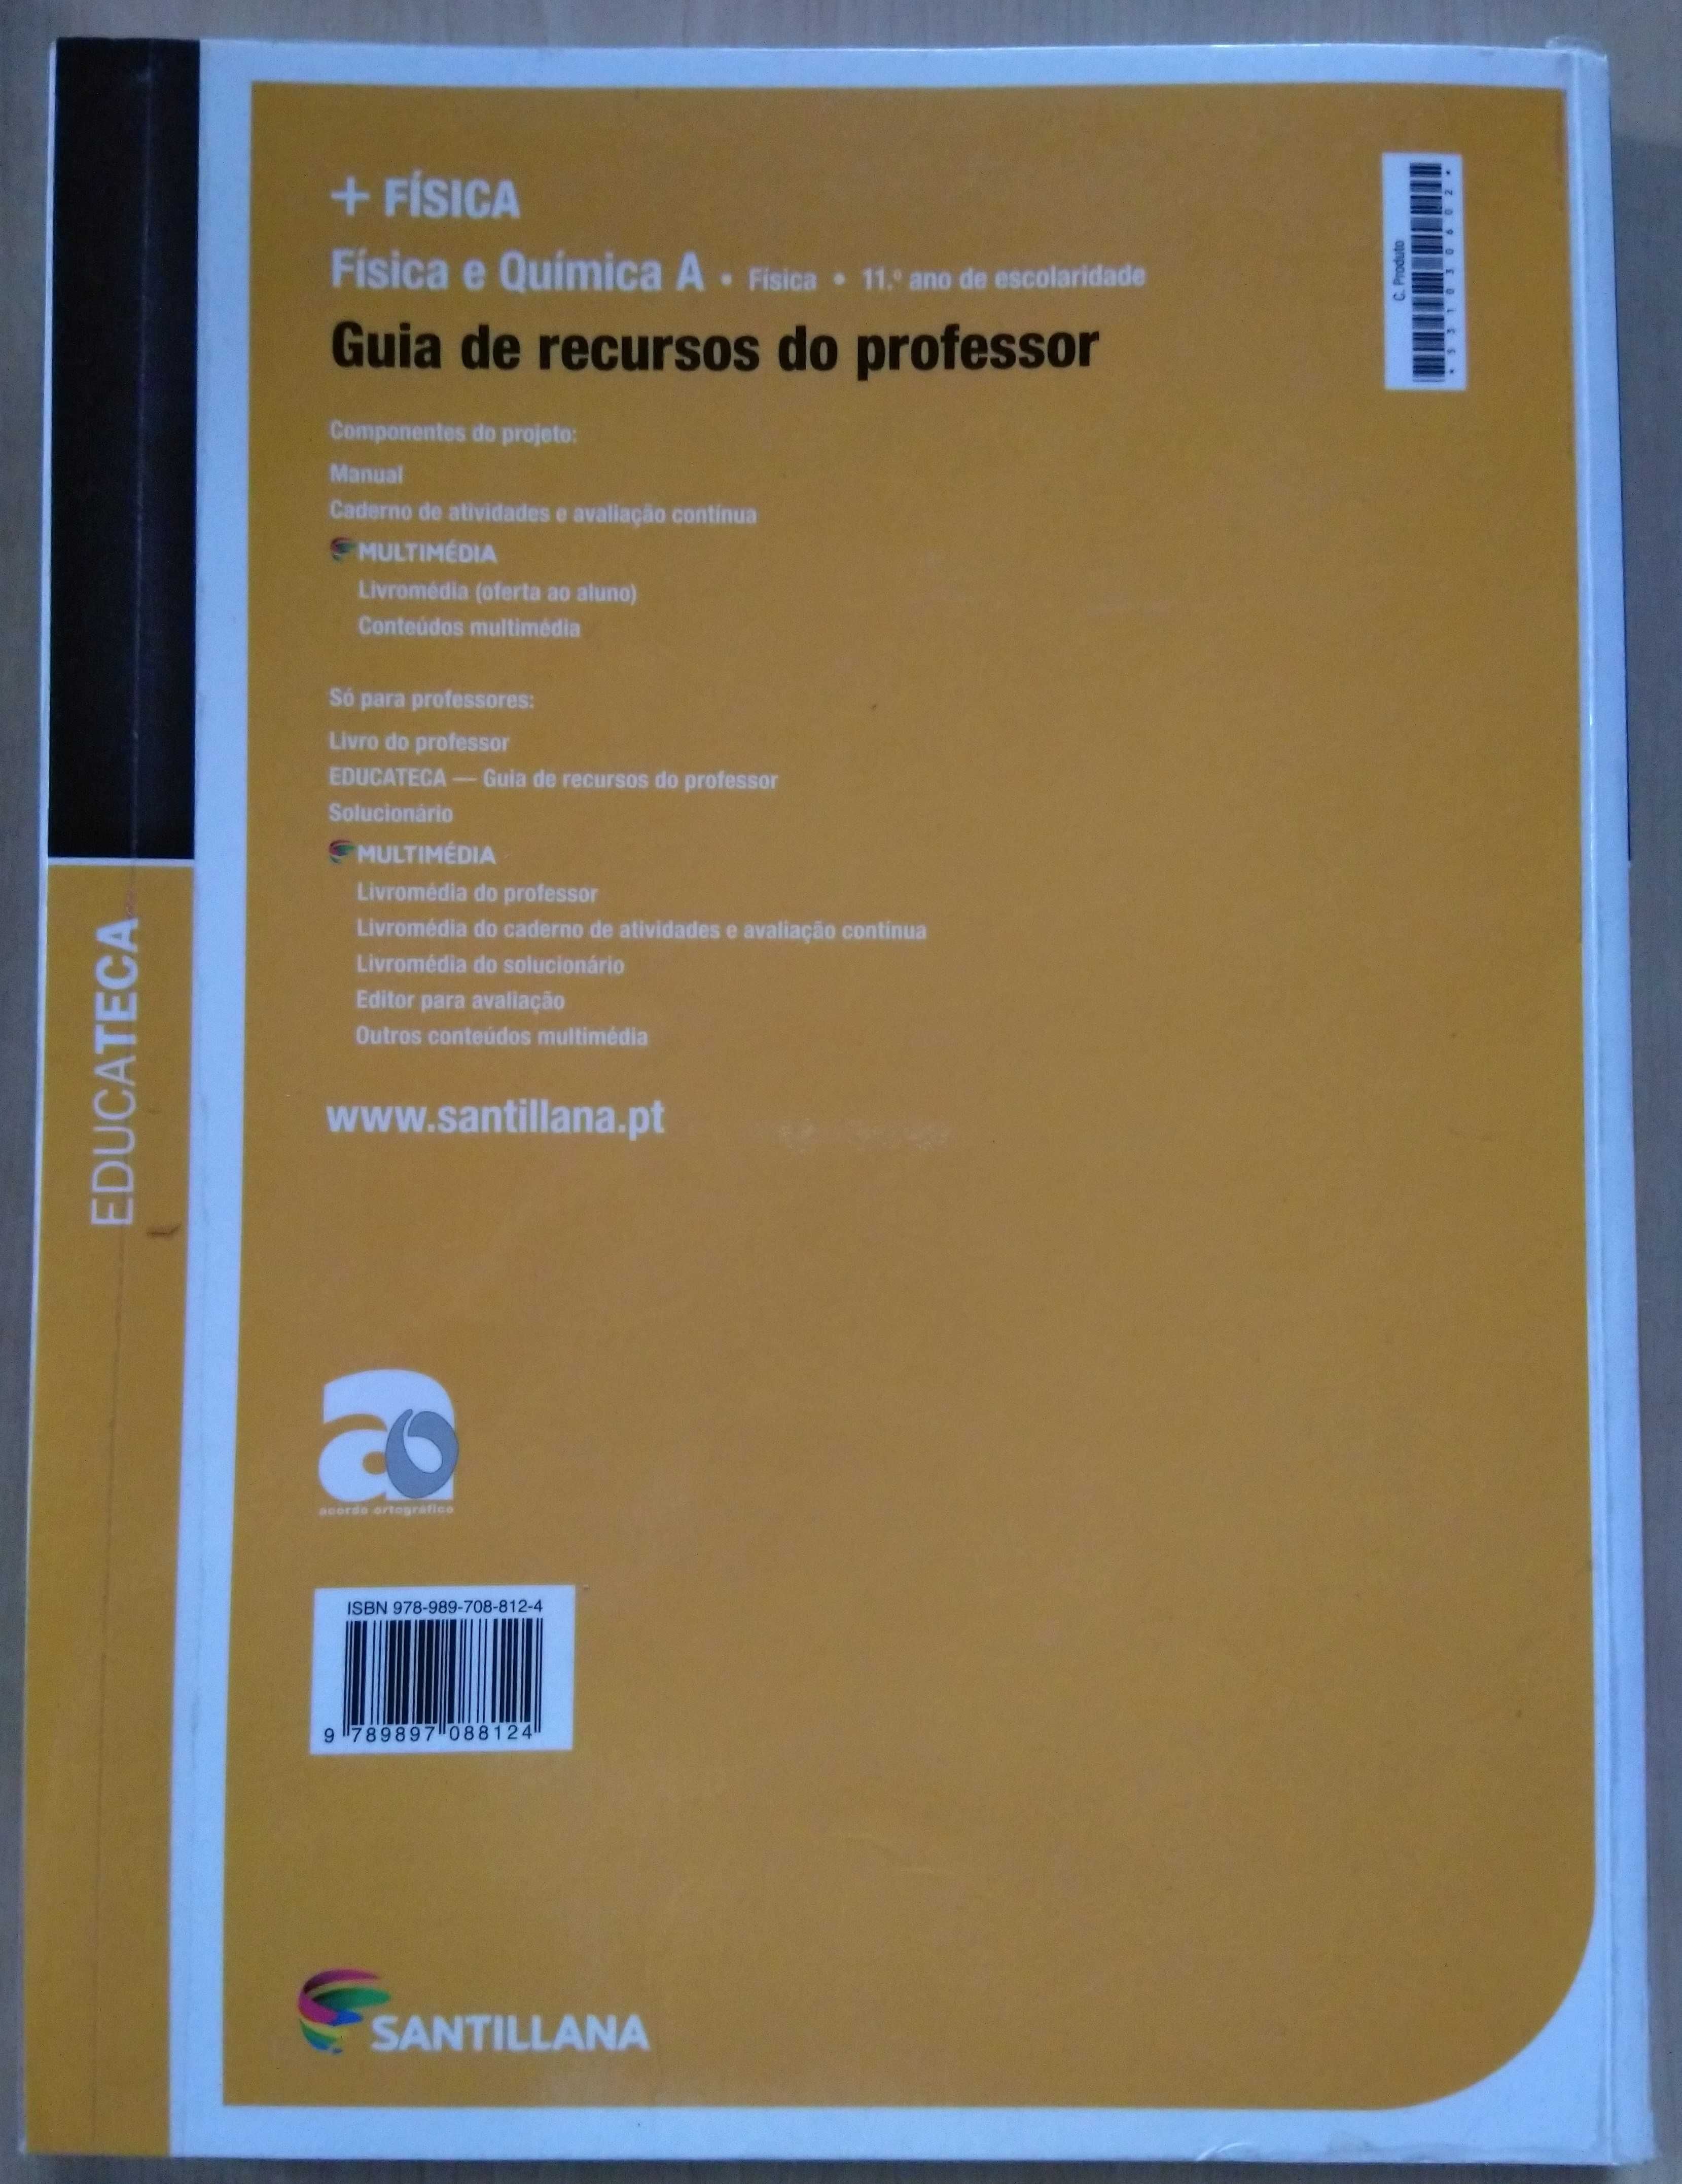 Guia de Recursos do Professor (Educateca) - + Física 11